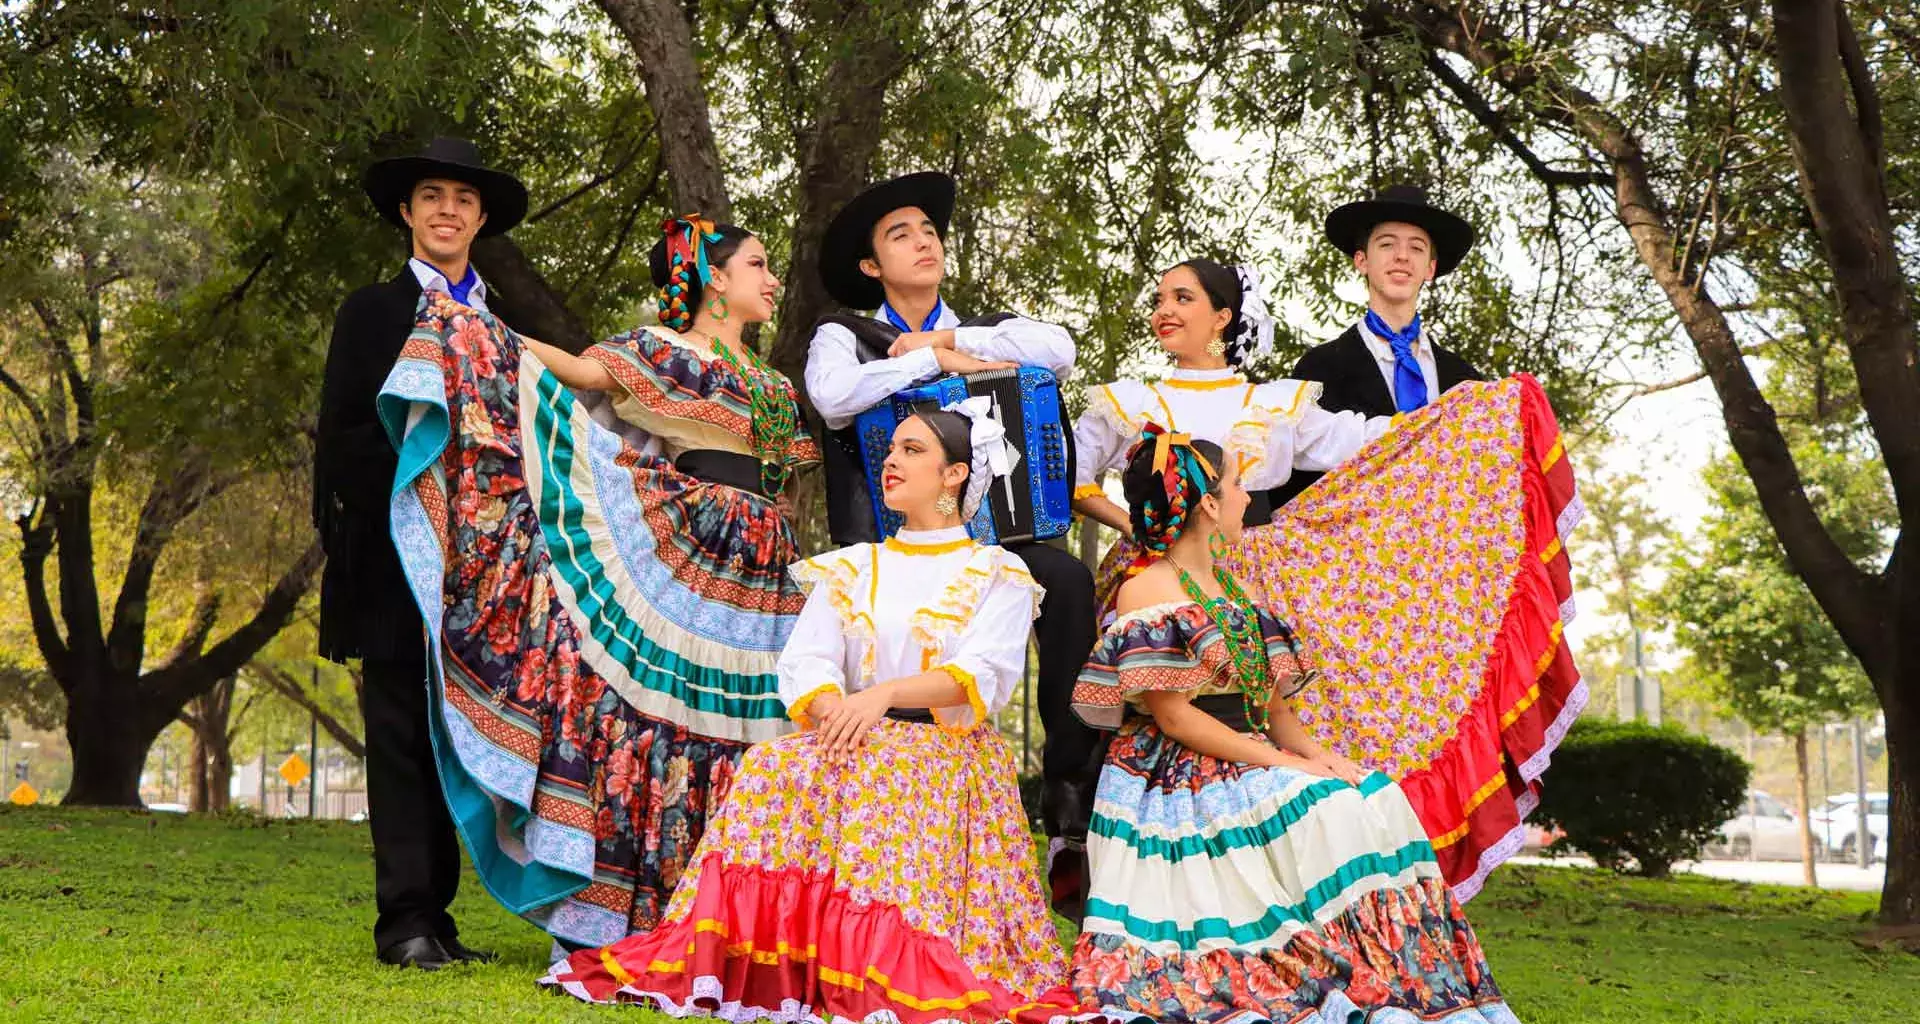 ¡Fiesta mexicana! Llega folclore y música al Auditorio Luis Elizondo